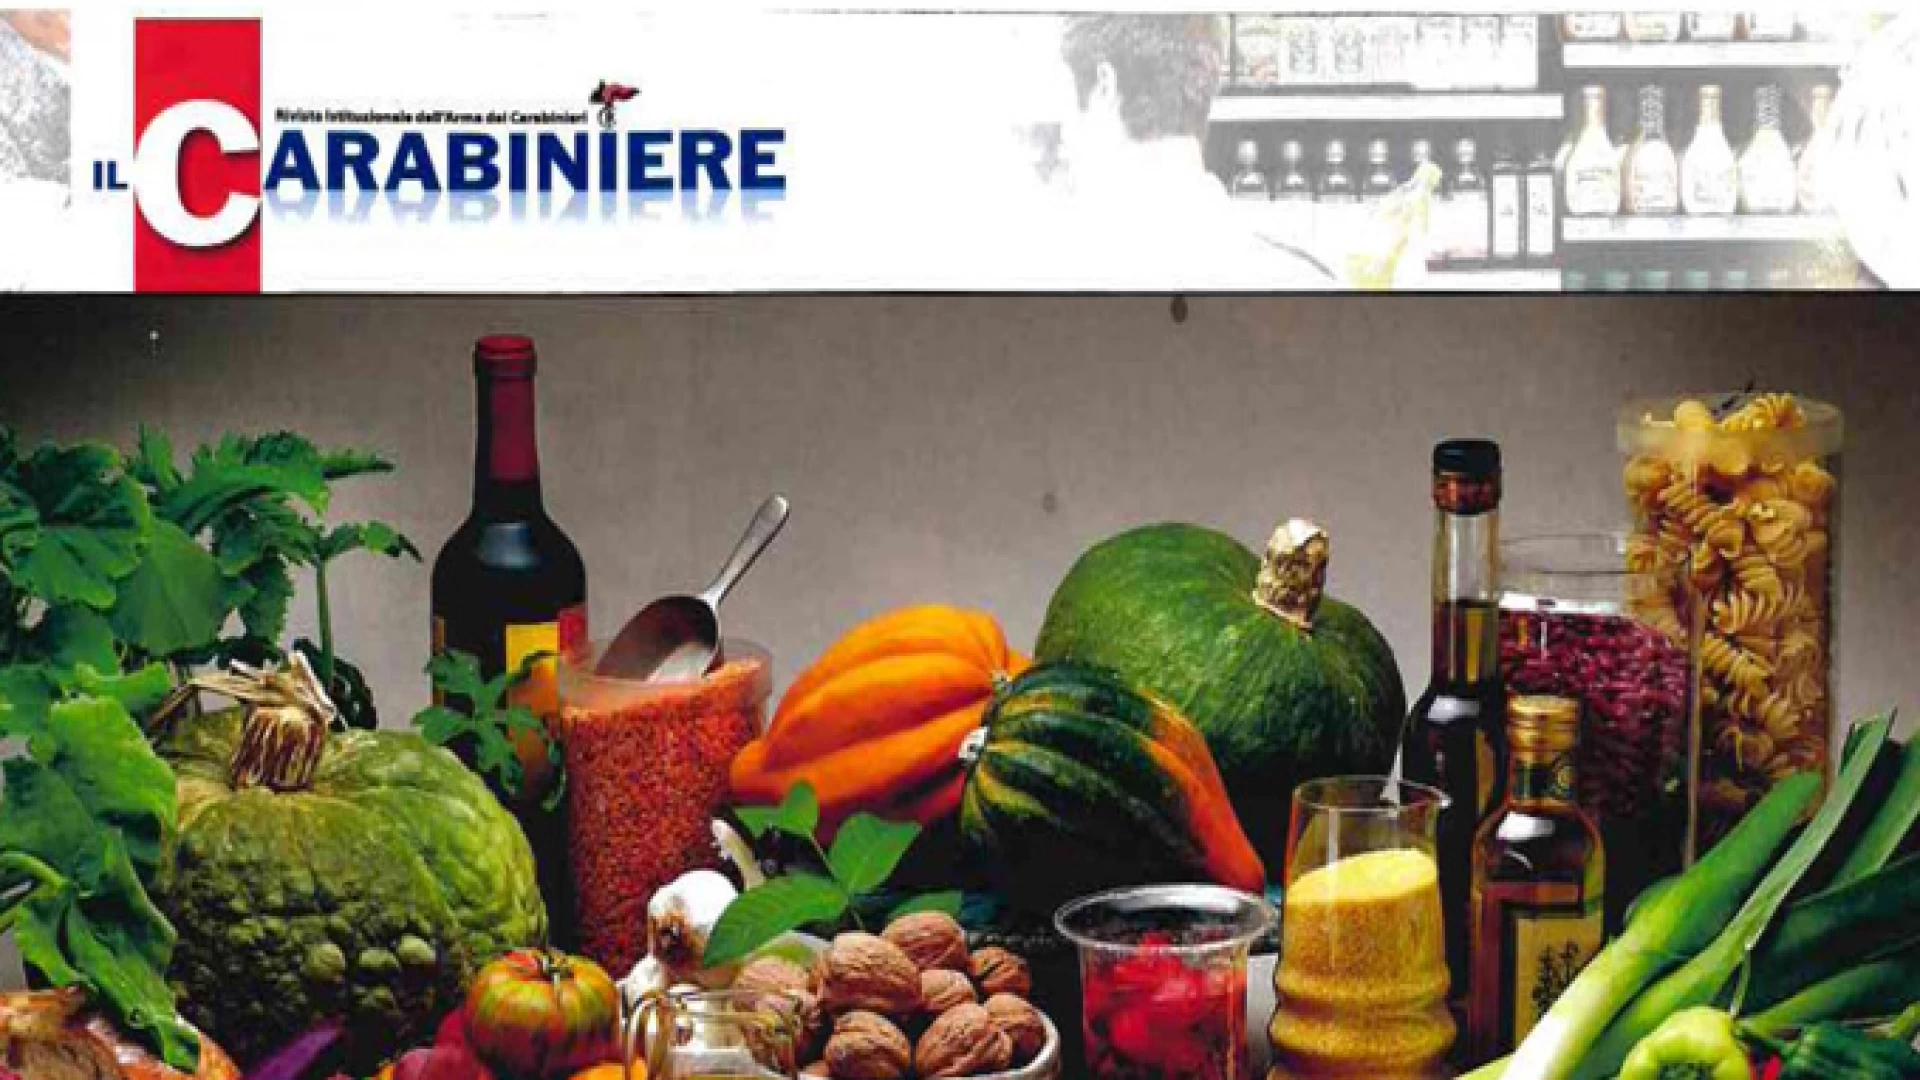 Isernia: I Consigli dell’Arma ai consumatori sul cibo di qualità nella rivista “Il Carabiniere”.